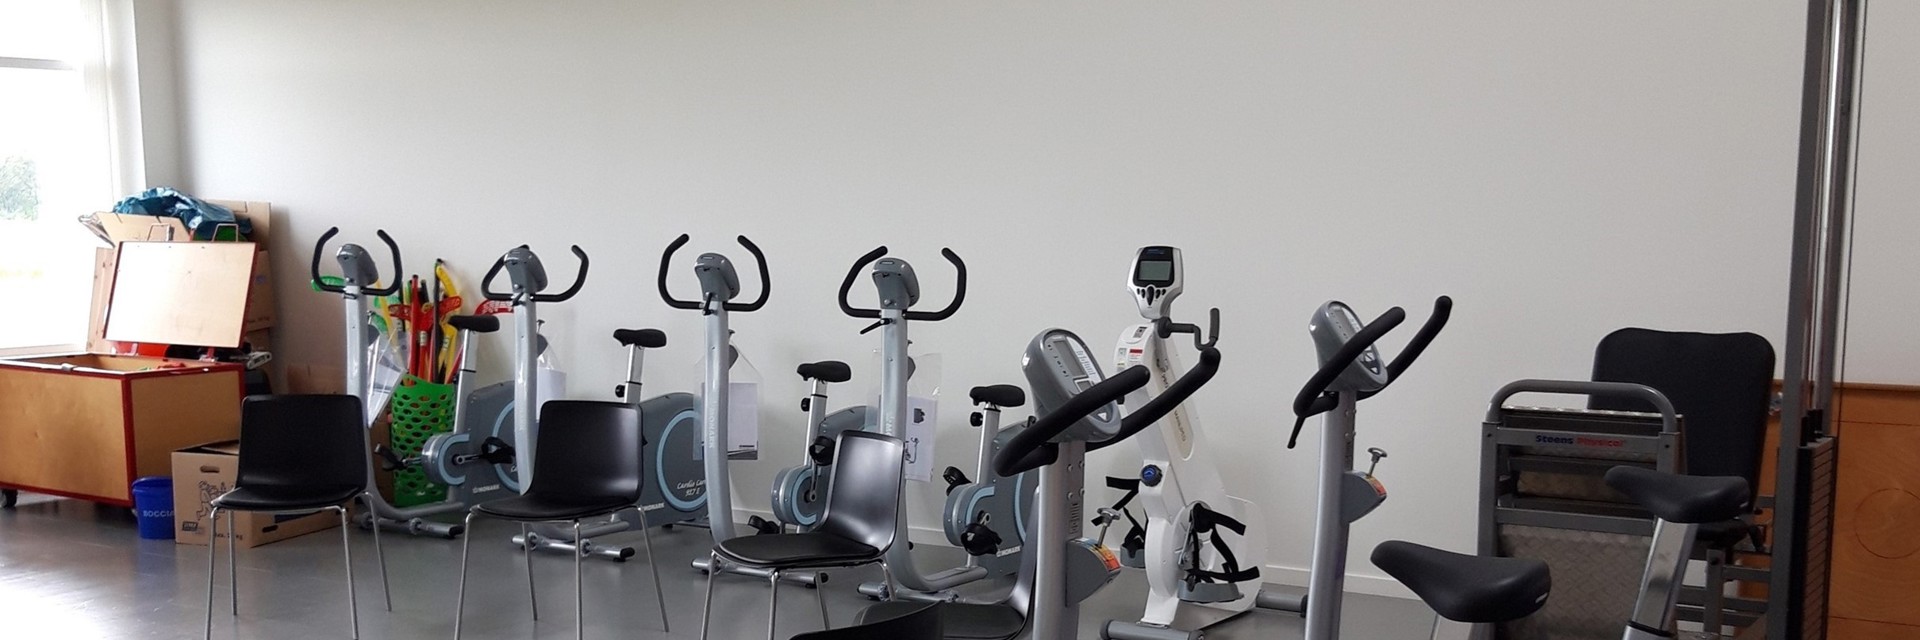 Billede af træningsmaskiner inde i et træningsrum